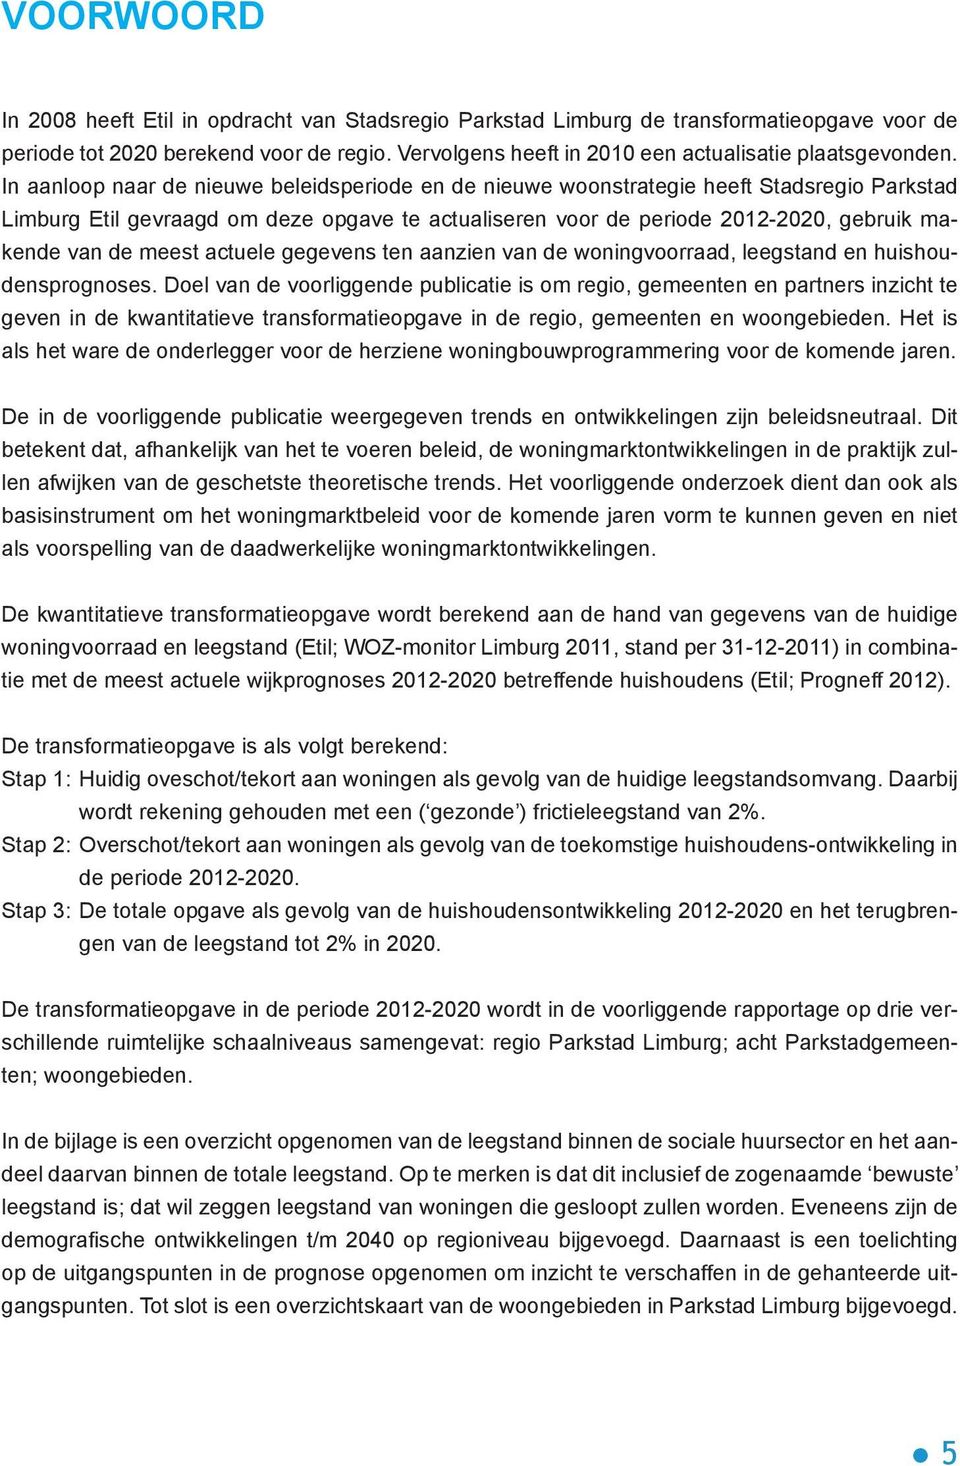 In aanloop naar de nieuwe beleidsperiode en de nieuwe woonstrategie heeft Stadsregio Parkstad Limburg Etil gevraagd om deze opgave te actualiseren voor de periode 2012-2020, gebruik makende van de